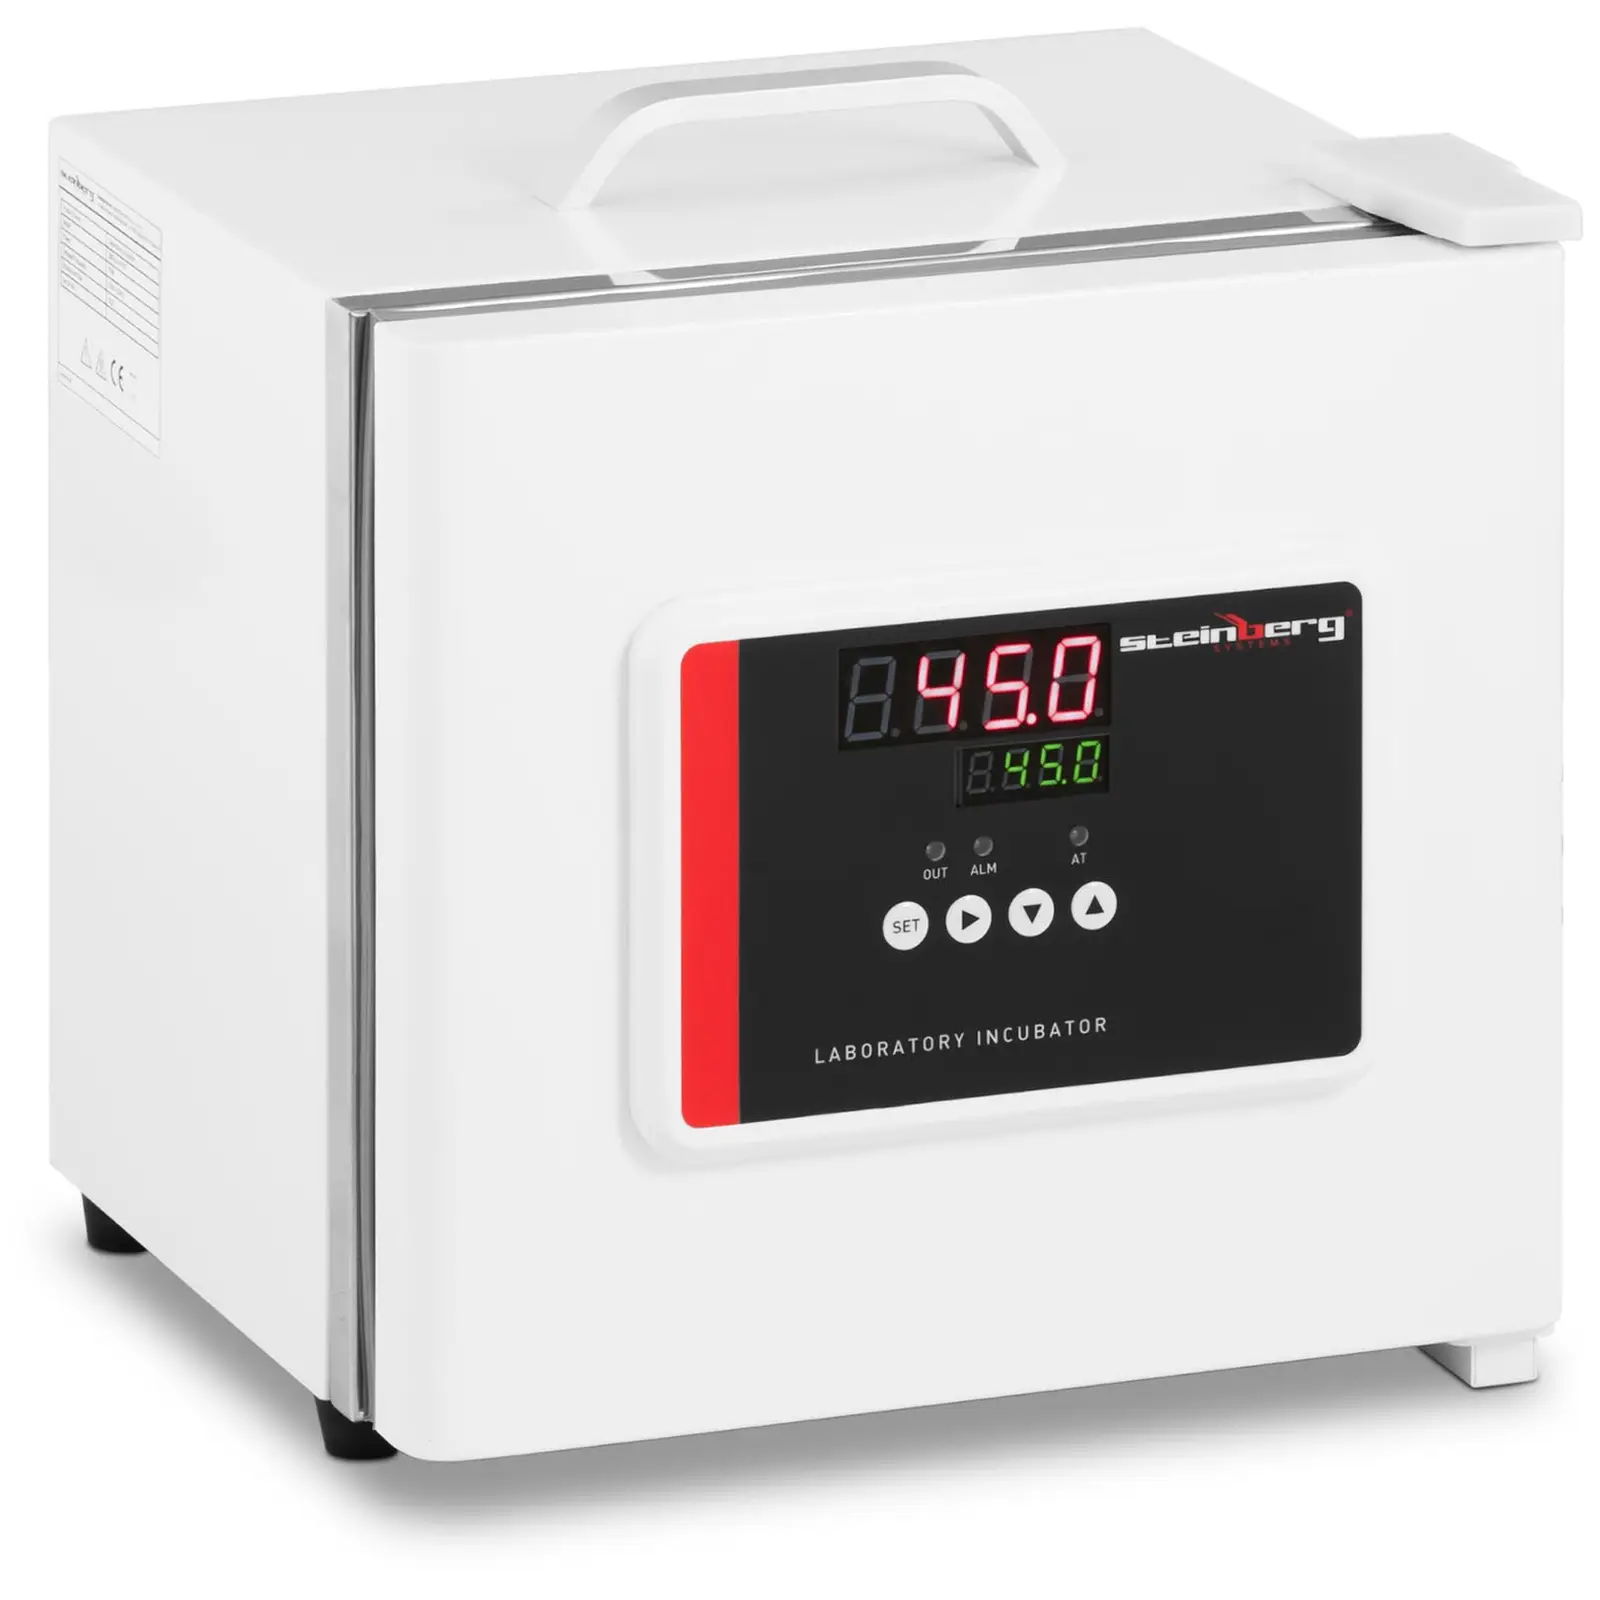 Laboratorijski inkubator - do 45 °C - 7.5 L